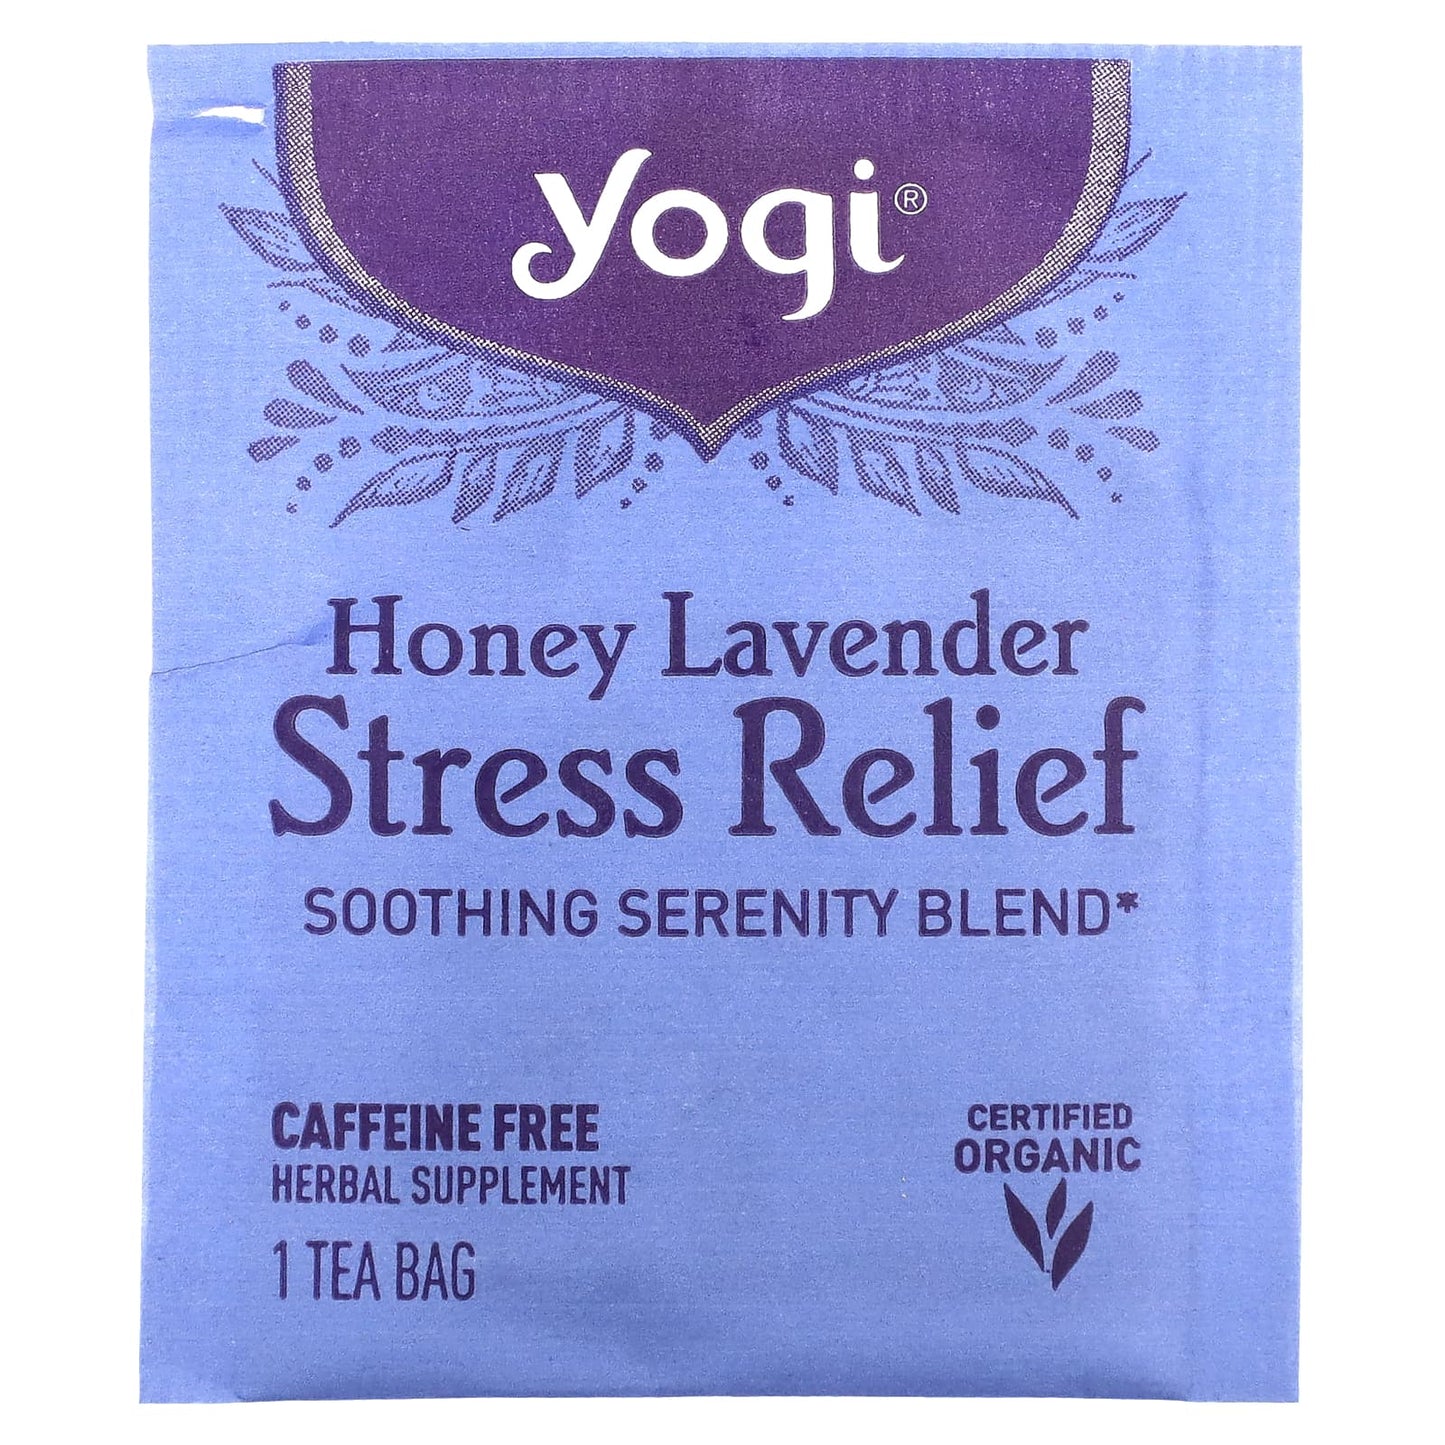 Yogi Tea, Stress Relief, Honey Lavender, Caffeine Free, 16 Tea Bags, 1.02 oz (29 g)